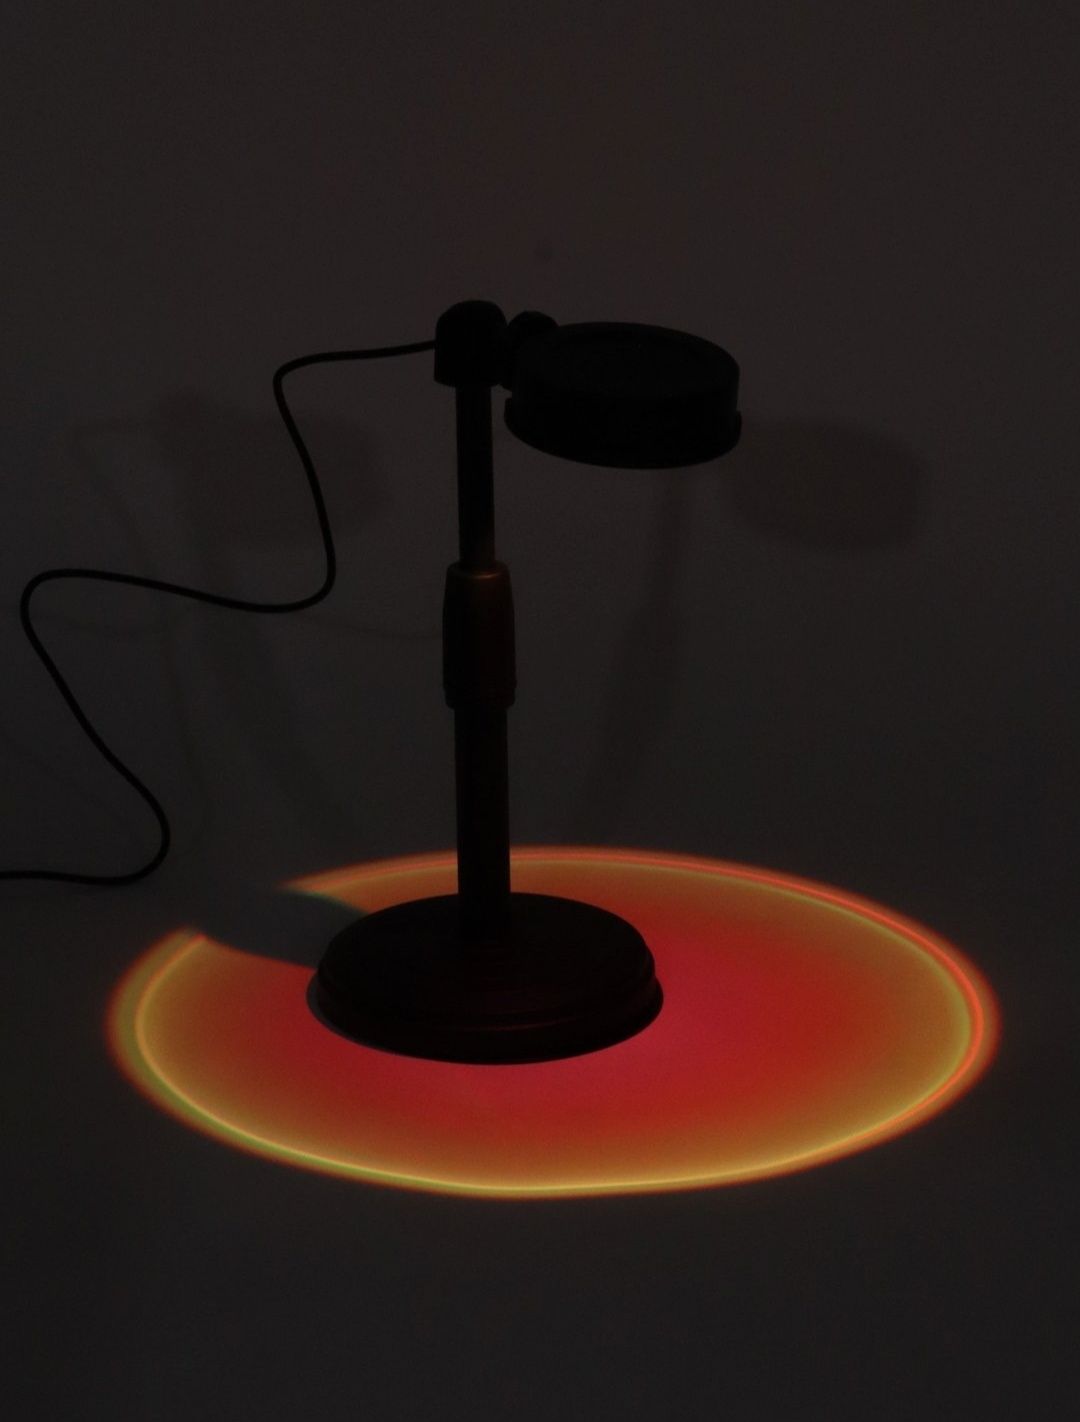 Лампа "Закат" для съемки тикток и фотосессии. RGBW 16 цветов,.